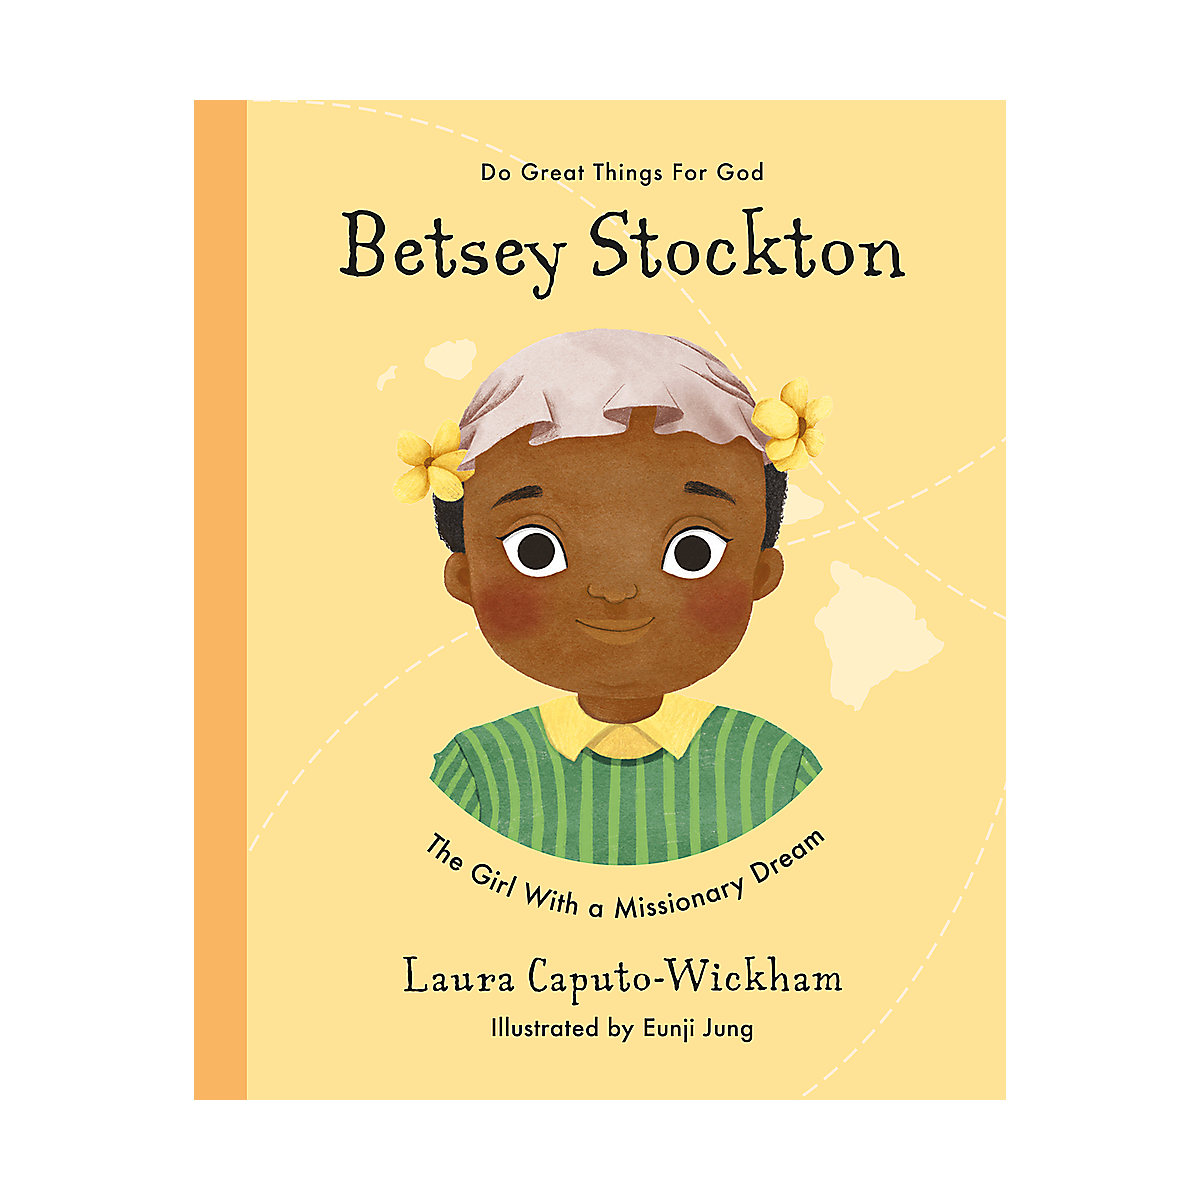 Betsey Stockton: la chica con un sueño misionero